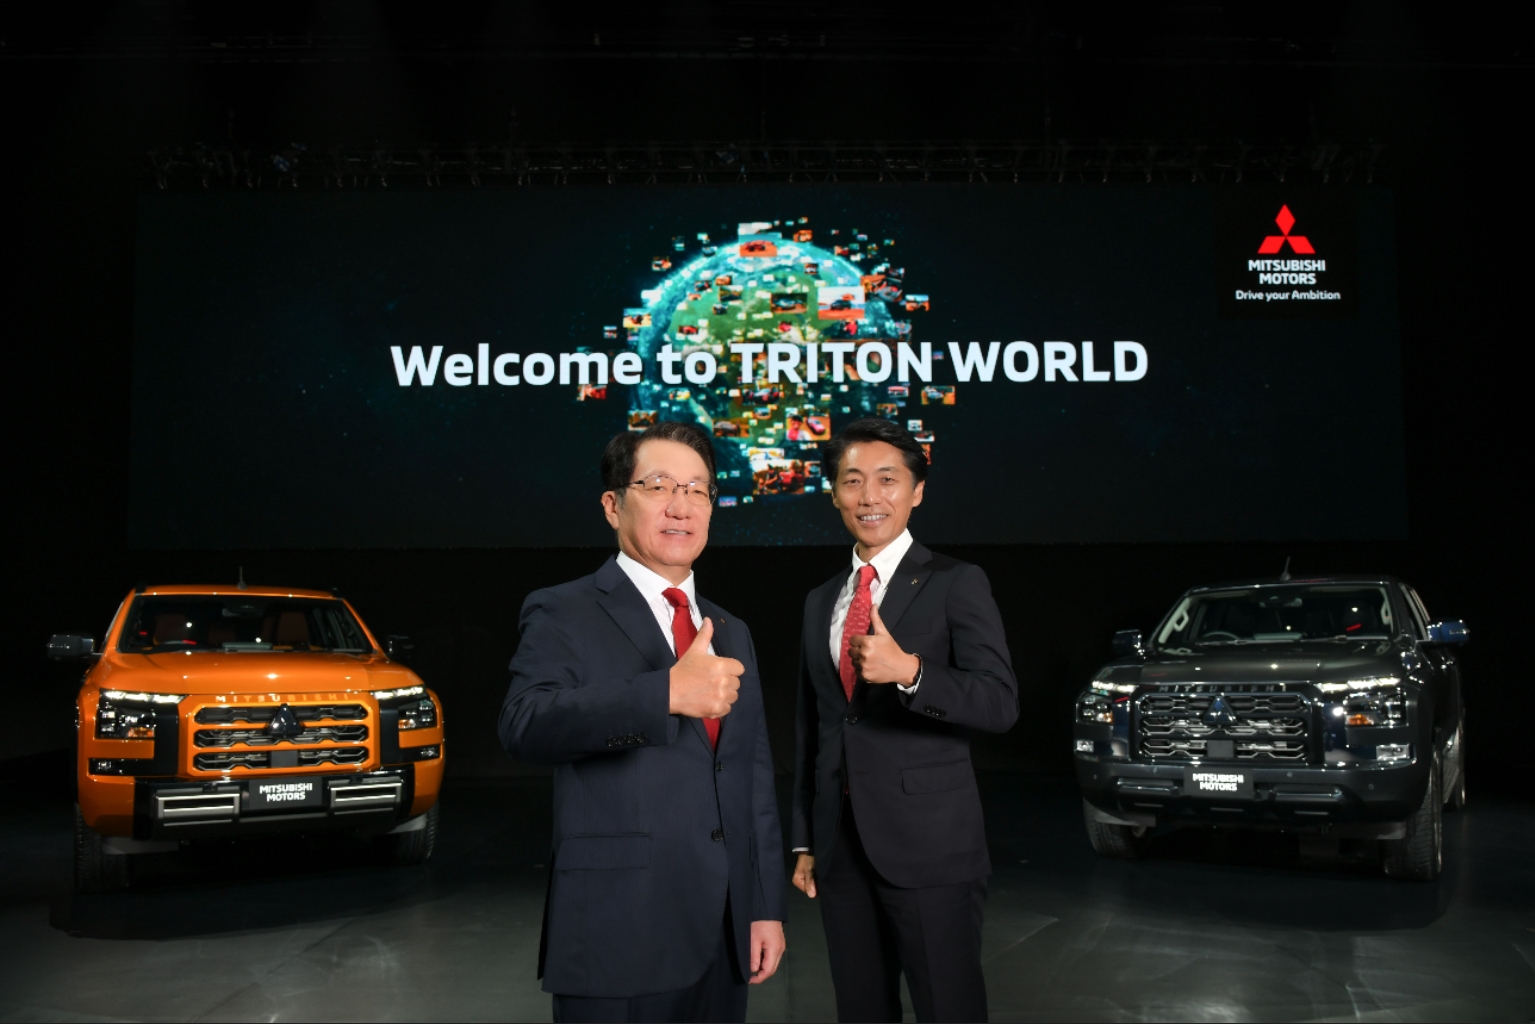 มิตซูบิชิ มอเตอร์ส เปิดตัวรถรุ่นใหม่ “ออล-นิว ไทรทัน” ปฏิวัติวงการรถกระบะ จำหน่ายในไทยเป็นที่แรกในโลกวันนี้! เตรียมเปิดตัวในญี่ปุ่น ต้นปี 2567